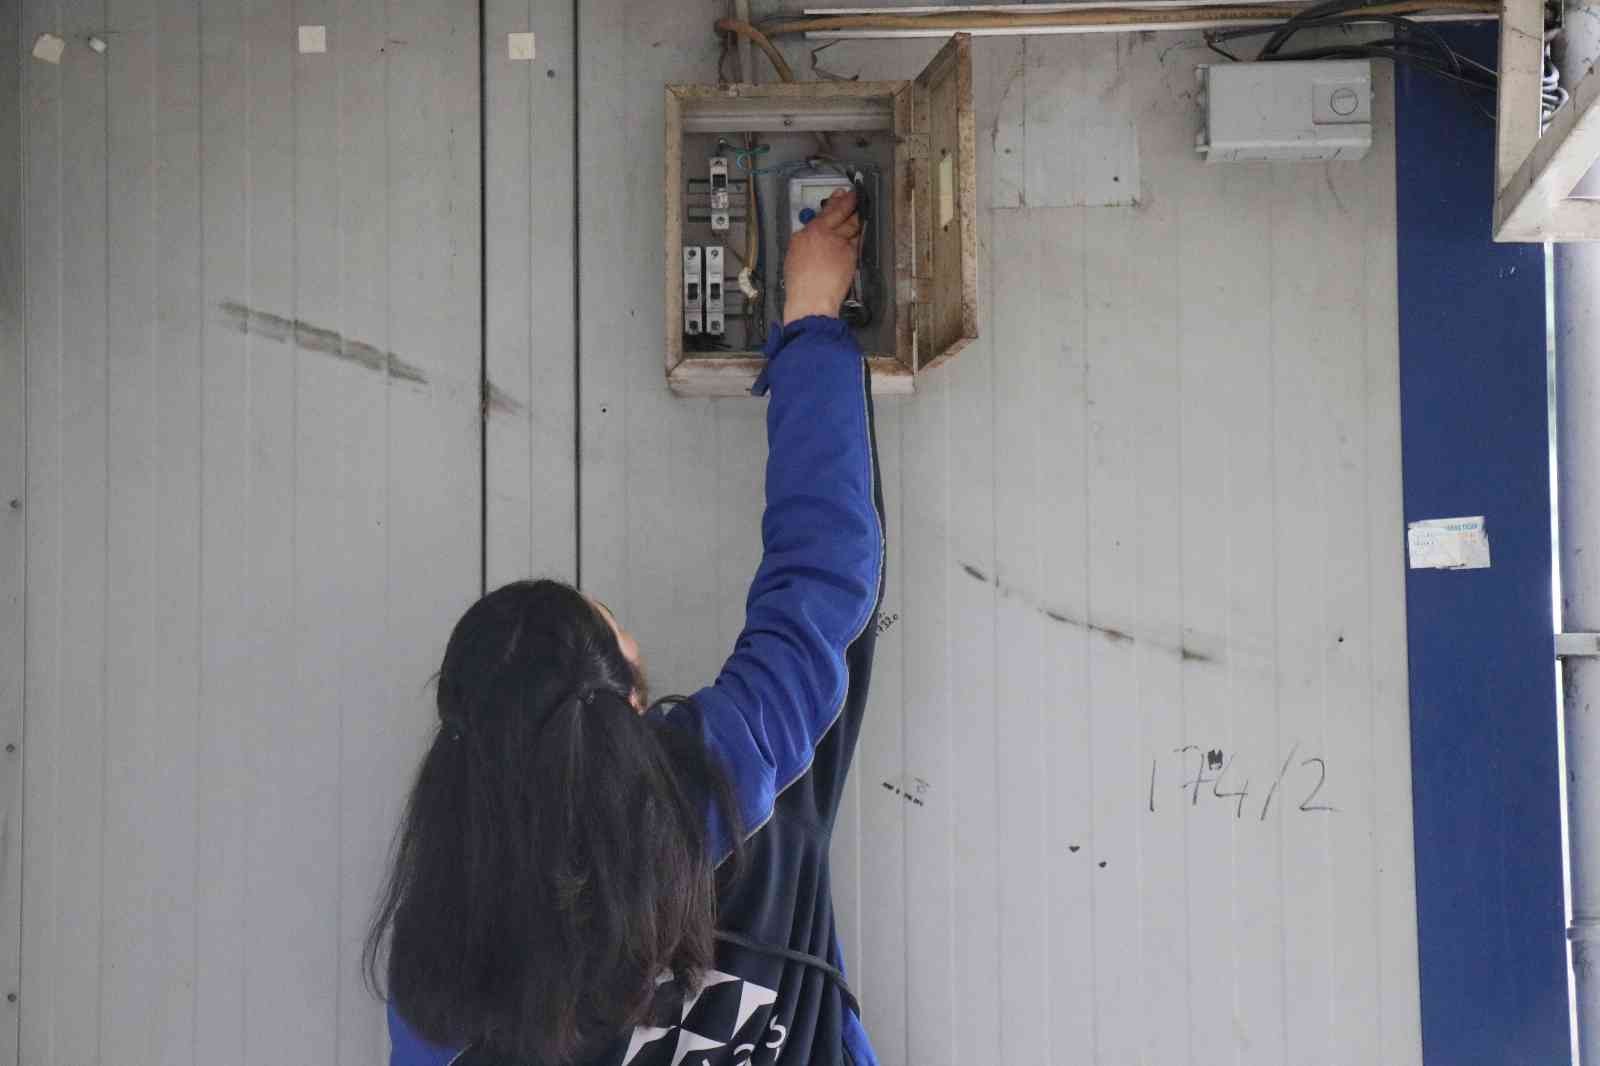 Sakarya’da elektrik sayaç okuyucu tek kadın olarak çalışan Selinay İşler: #sakarya